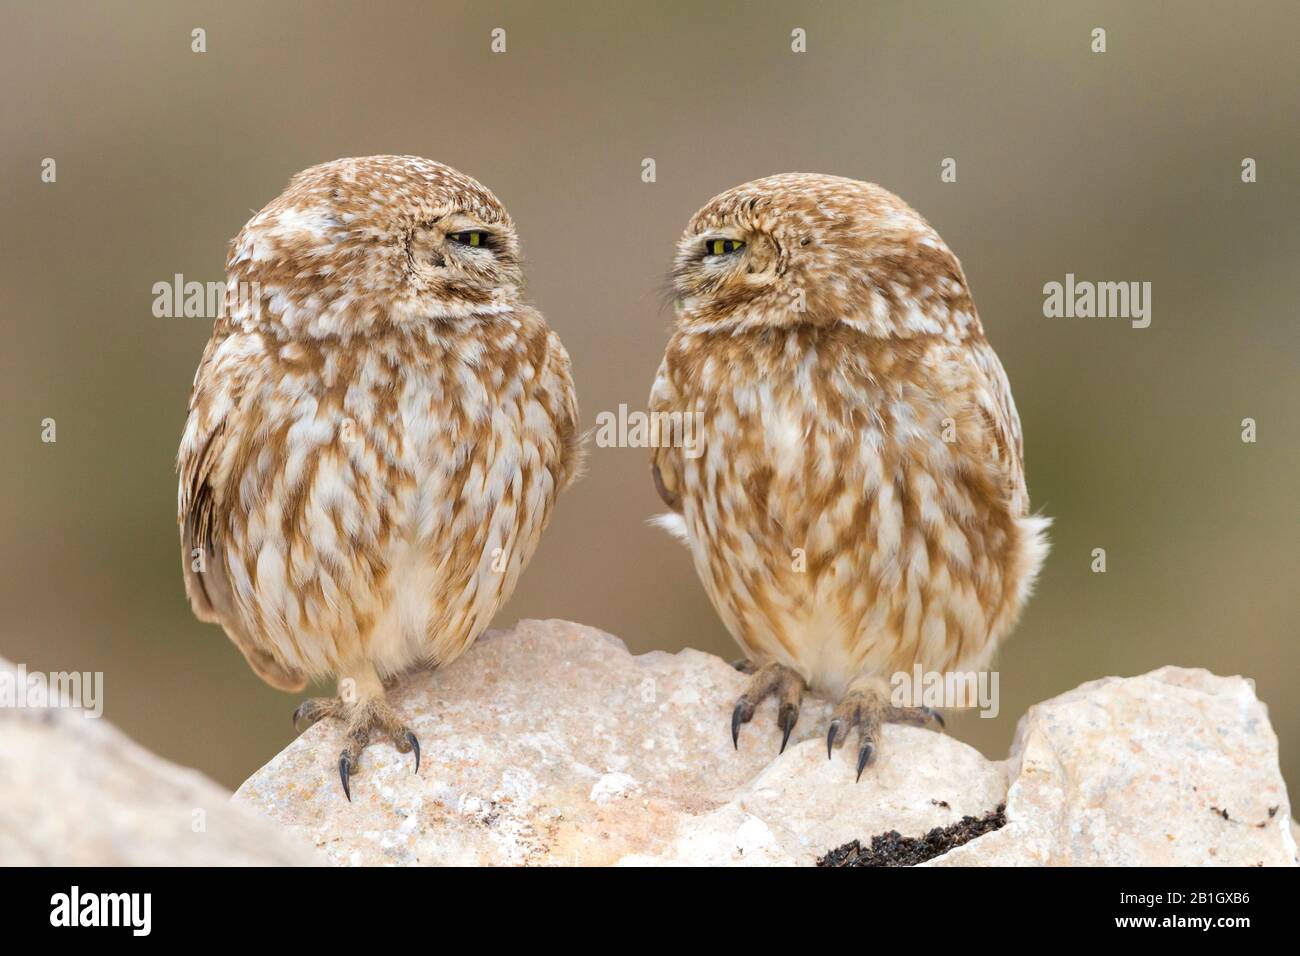 Petite chouette sahraouie (Athene noctua saharae, Athene saharae), paire se regardant dans l'oeil, Maroc Banque D'Images